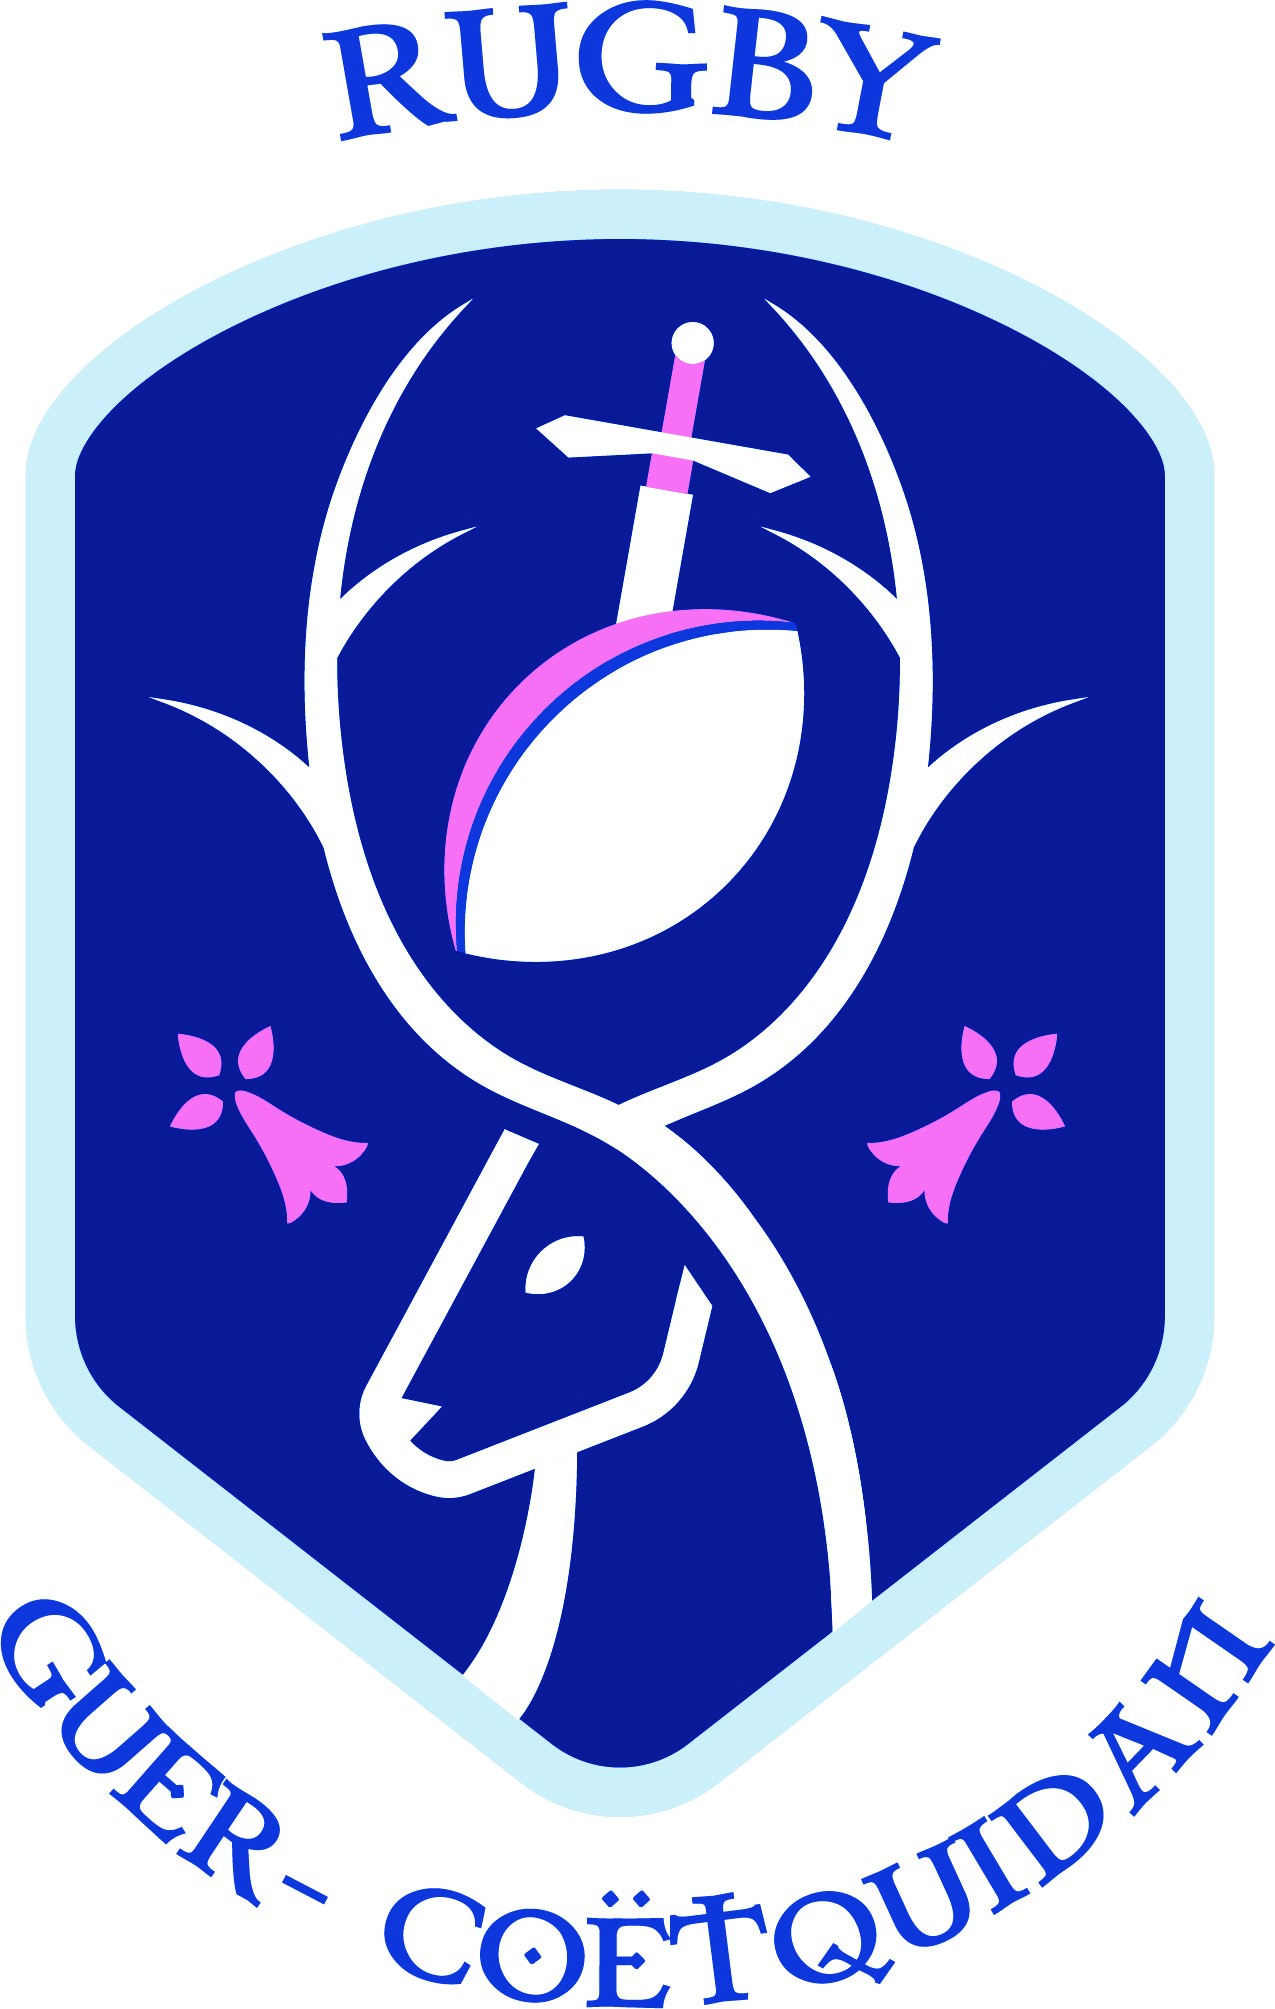 guer-coetquidan-rugby-logo-620a7da05df7d846164833.jpg